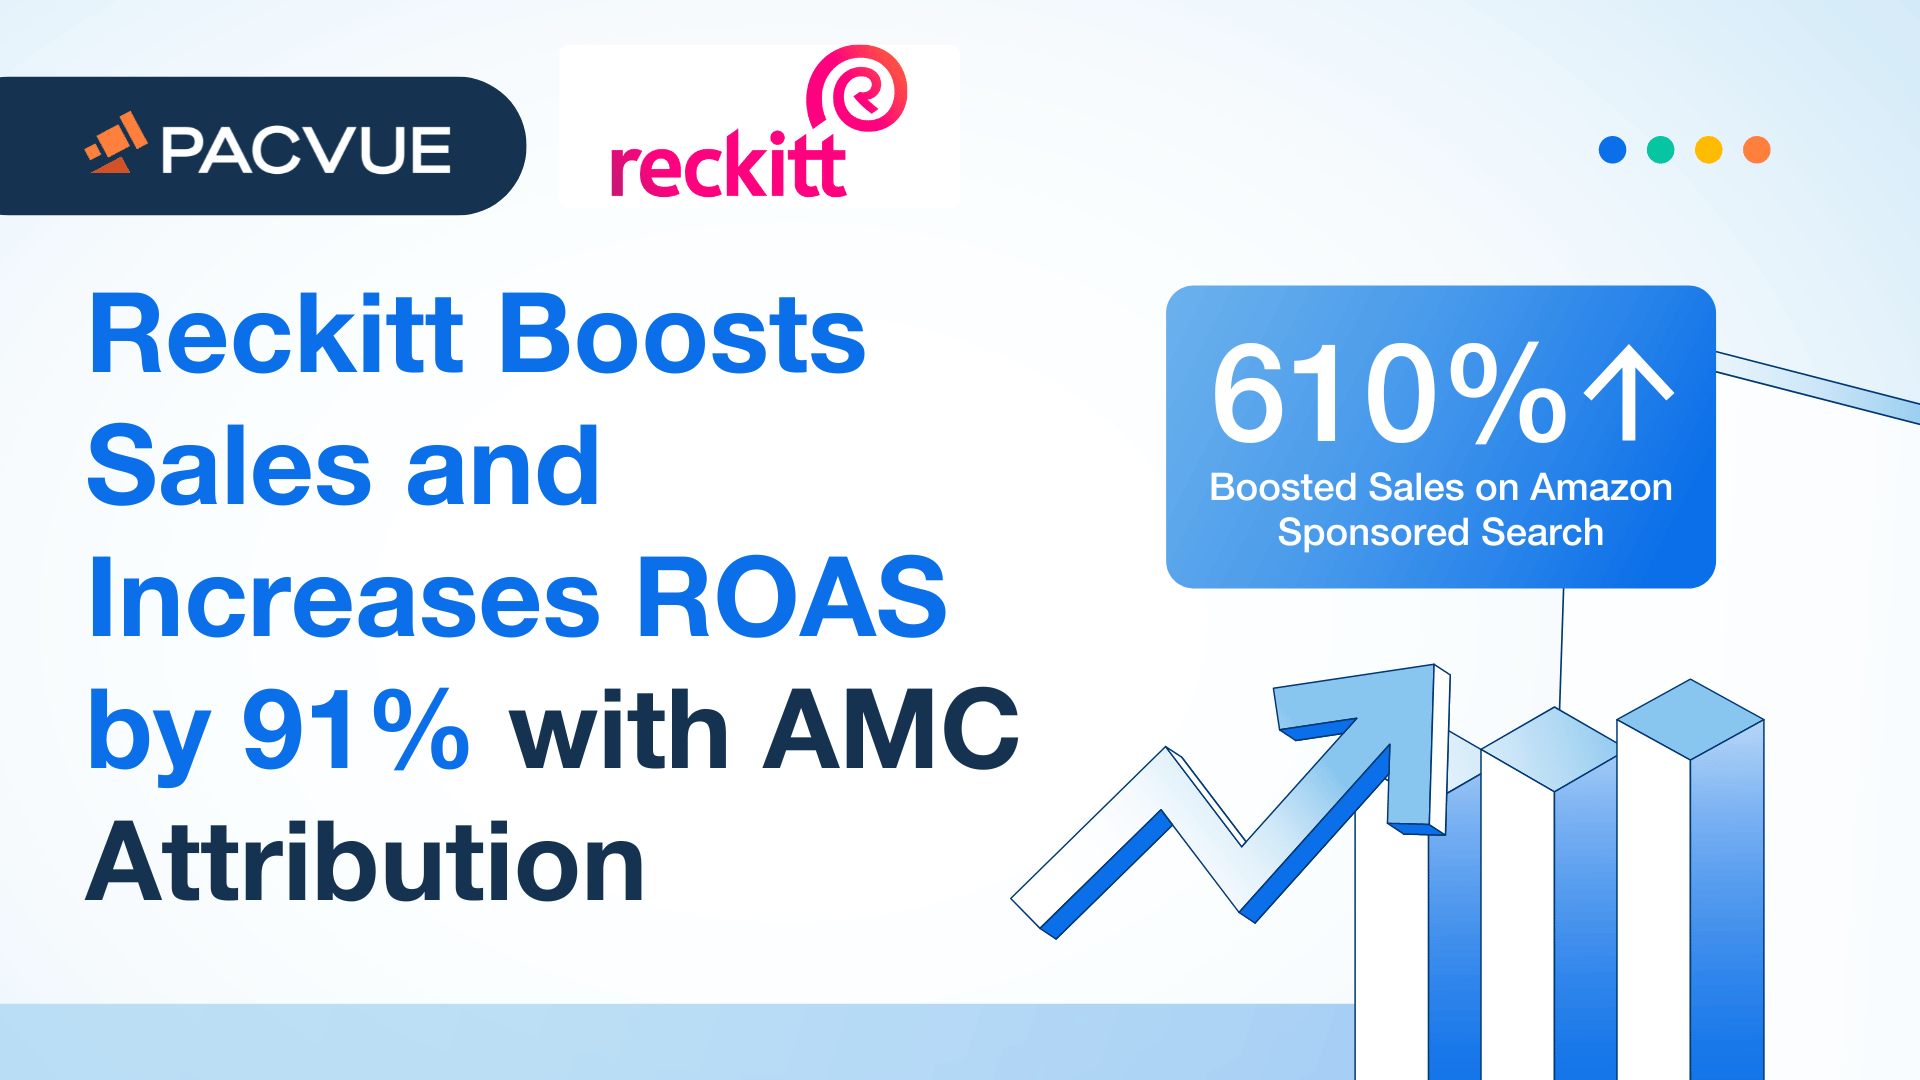 Reckitt aumenta sus ventas y su ROAS en un 91% con la atribución AMC